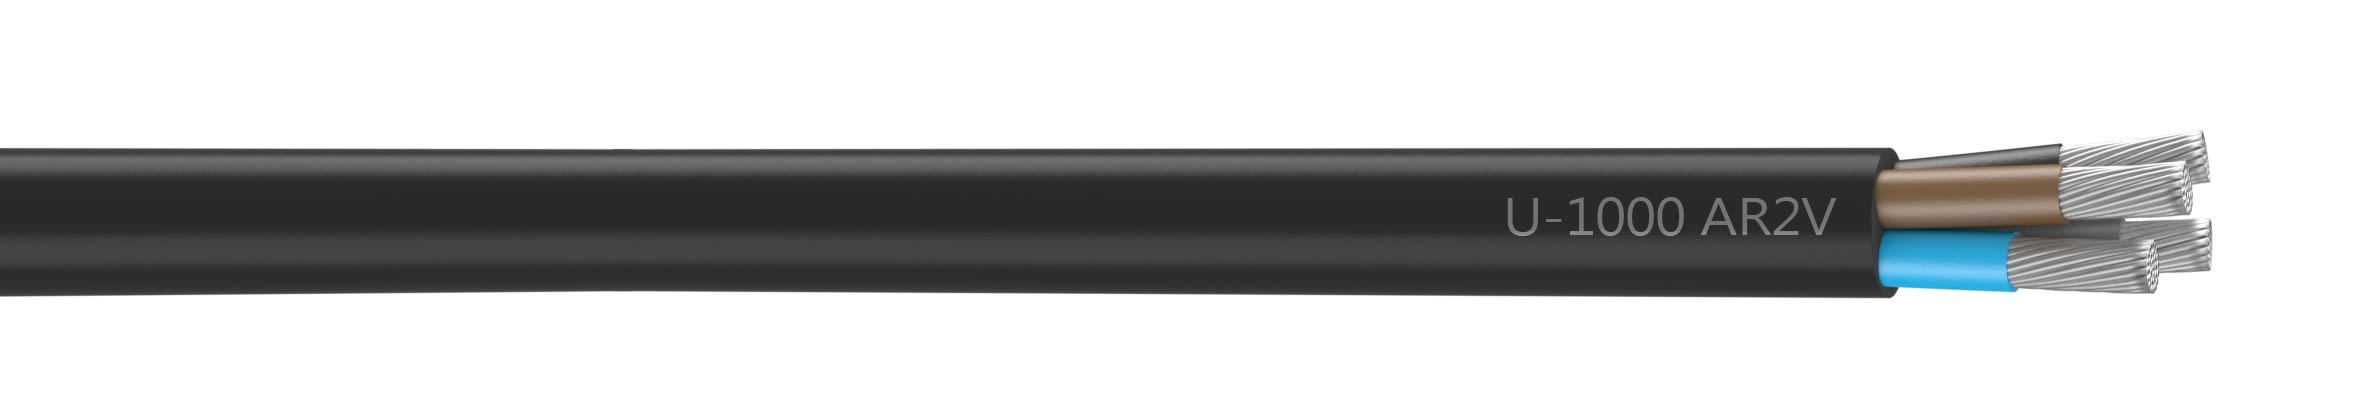 Nexans - Câble rigide U-1000 AR2V aluminium 4x150 longueur à la coupe